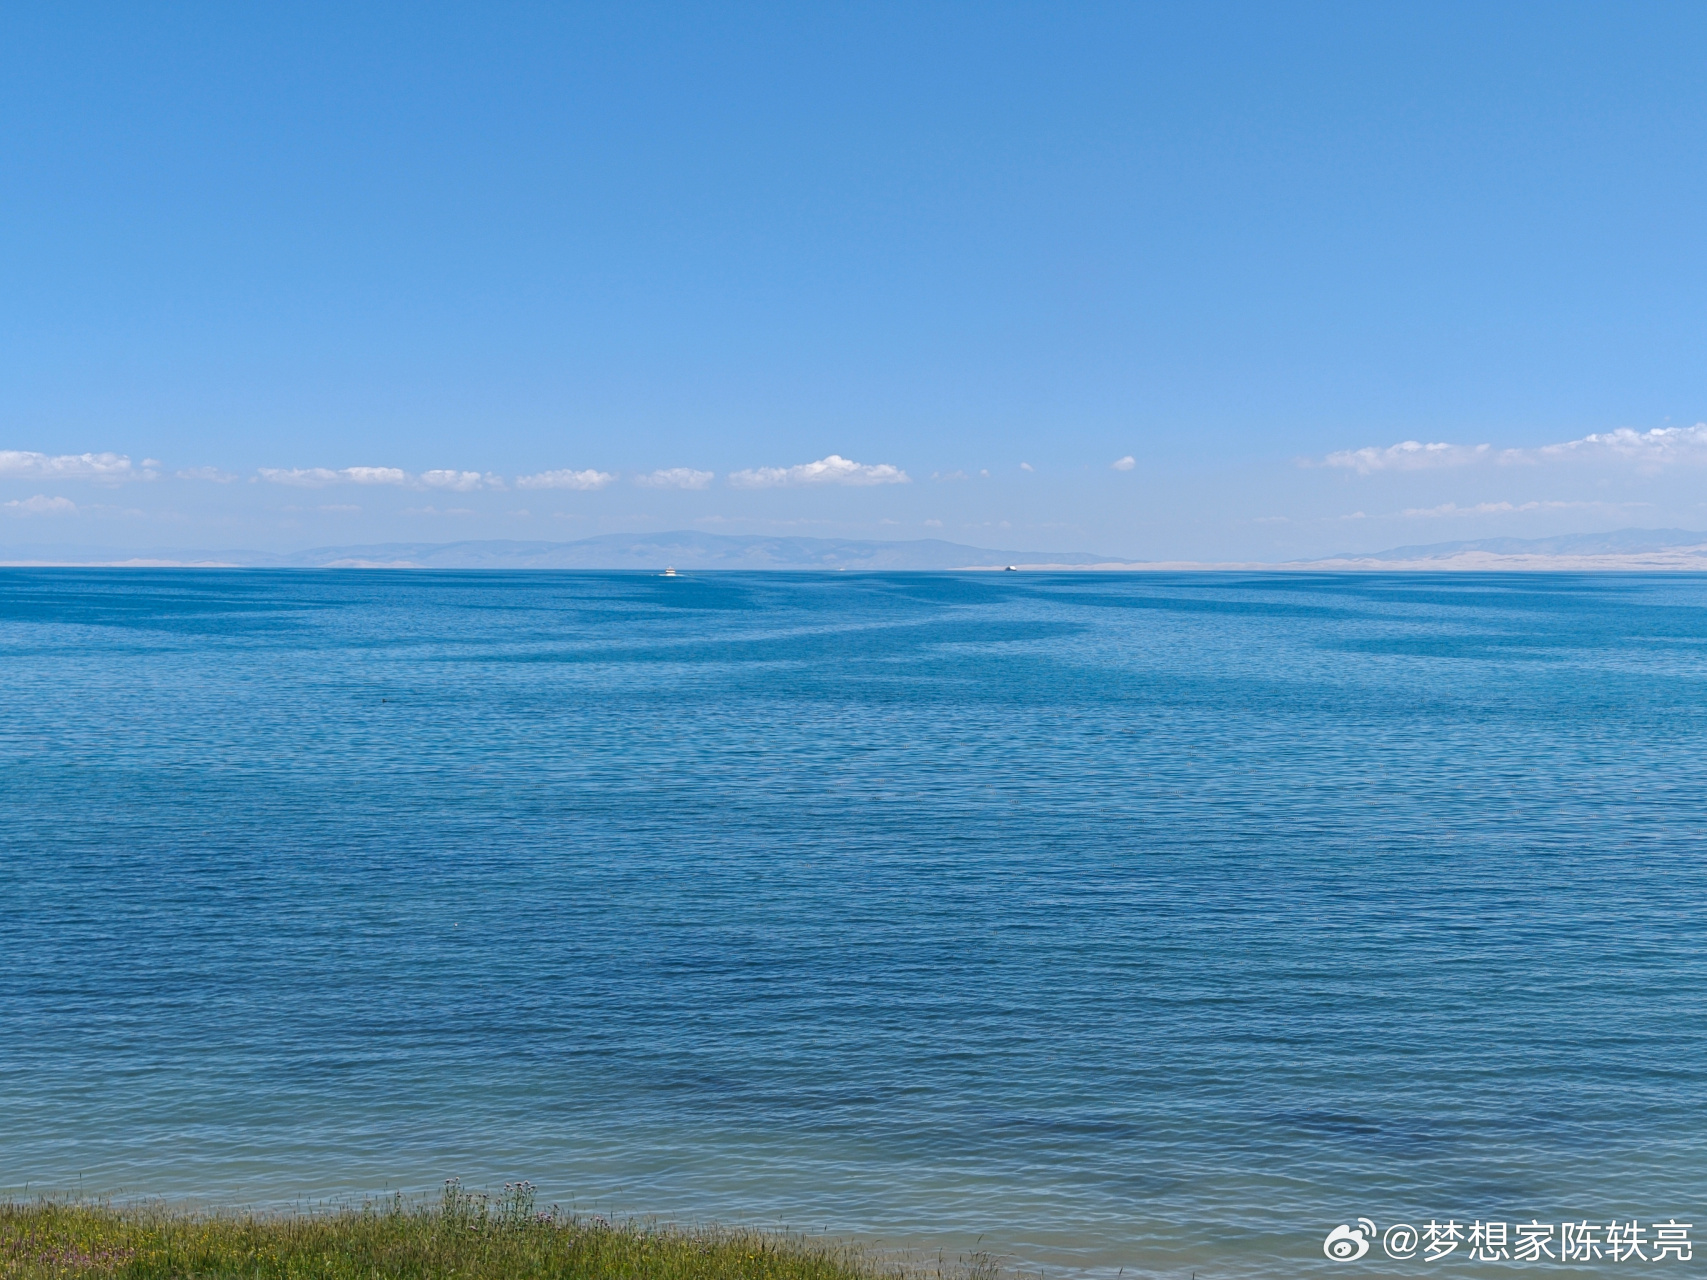 「青海湖旅游景区门票价格多少」✅ 青海湖旅游景区门票价格多少钱一张